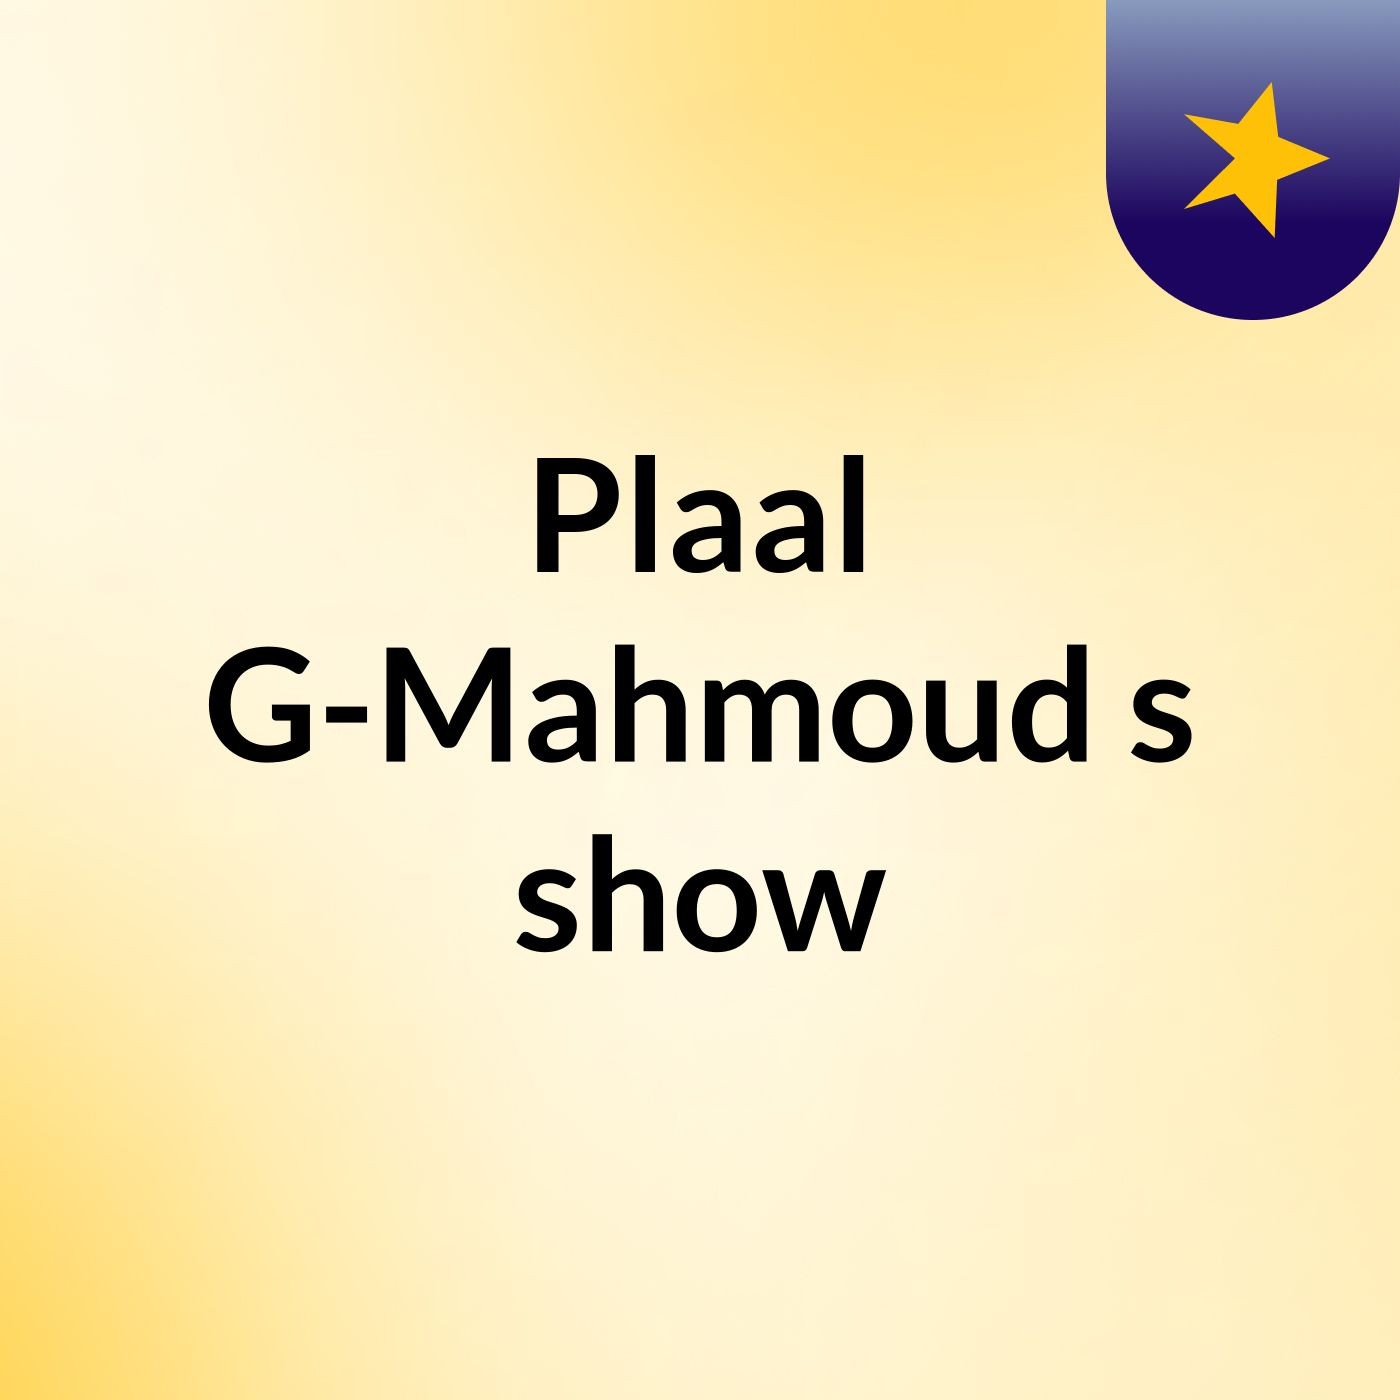 Plaal G-Mahmoud's show